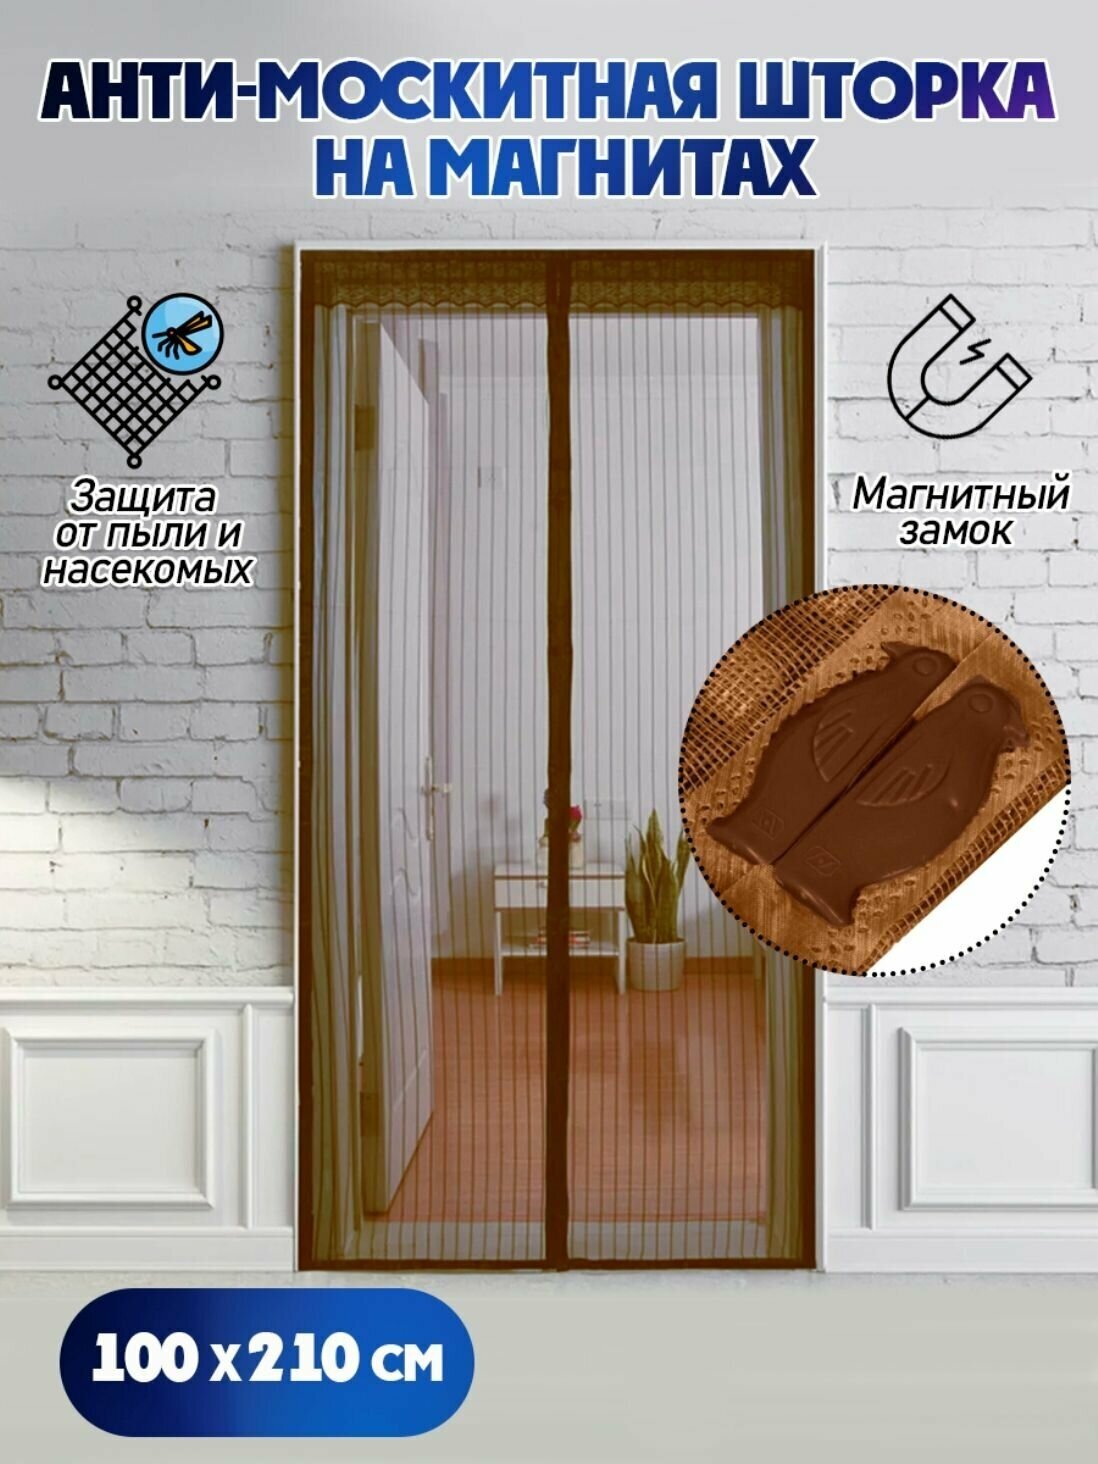 Москитная сетка/ антимоскитная сетка на дверь 100 х 210 см цвет коричневая